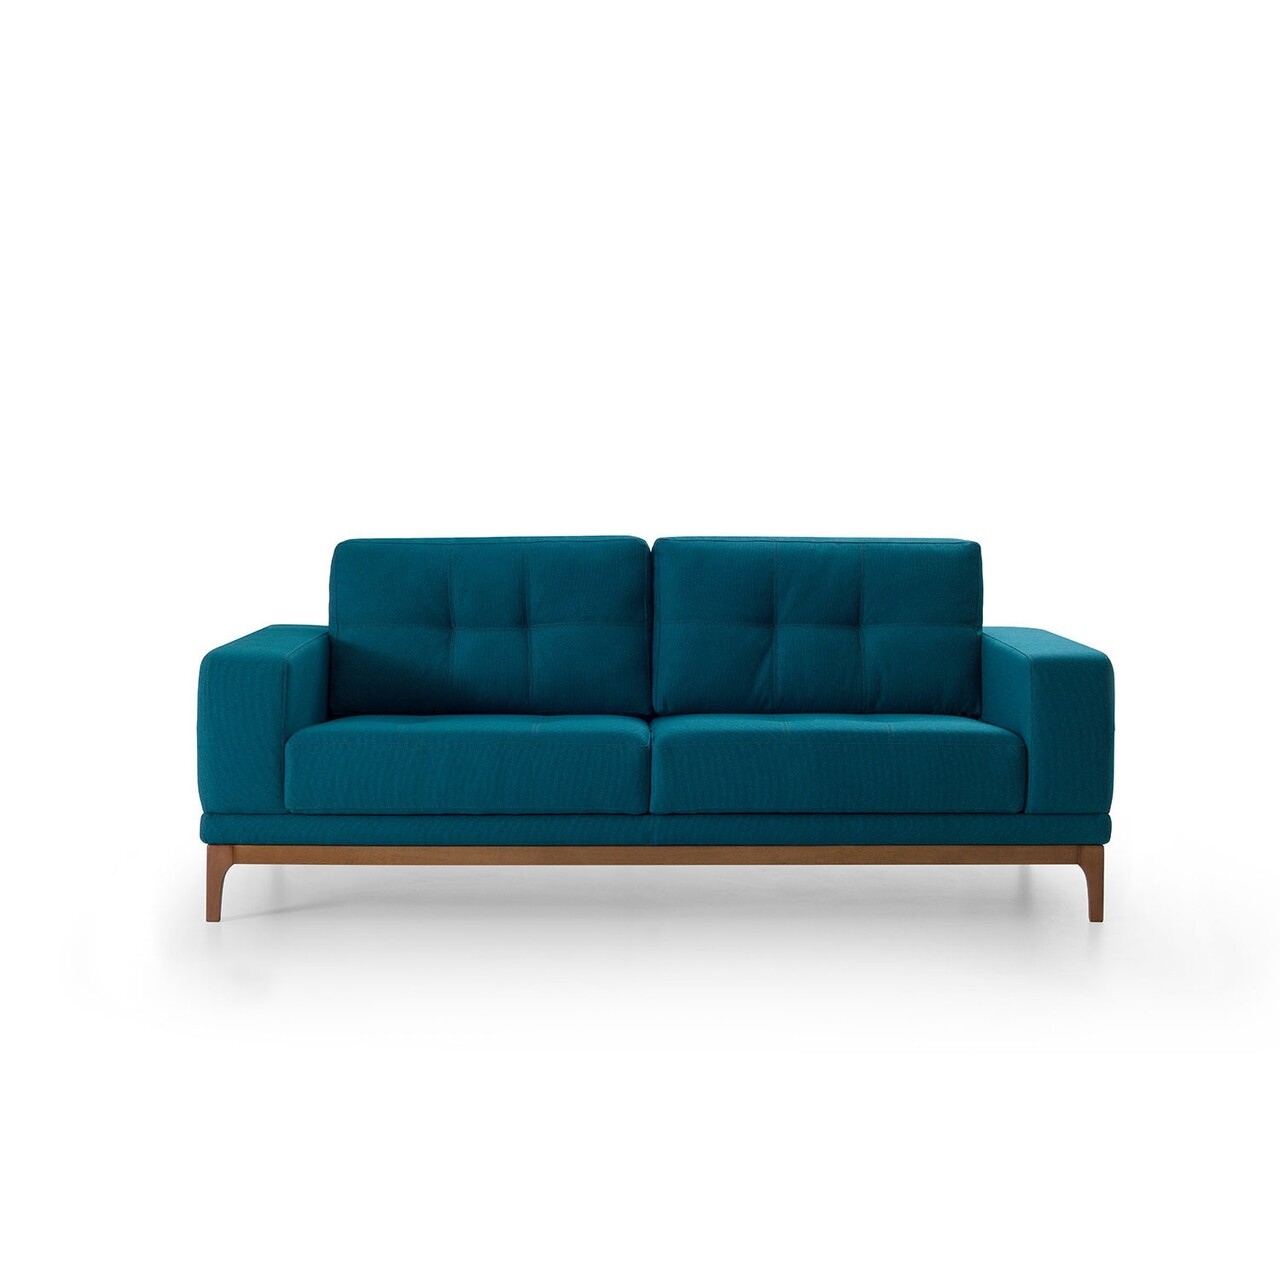 New tulip kihúzható kanapé, ndesign, 2 személyes, 170x97x83 cm, fa, kék